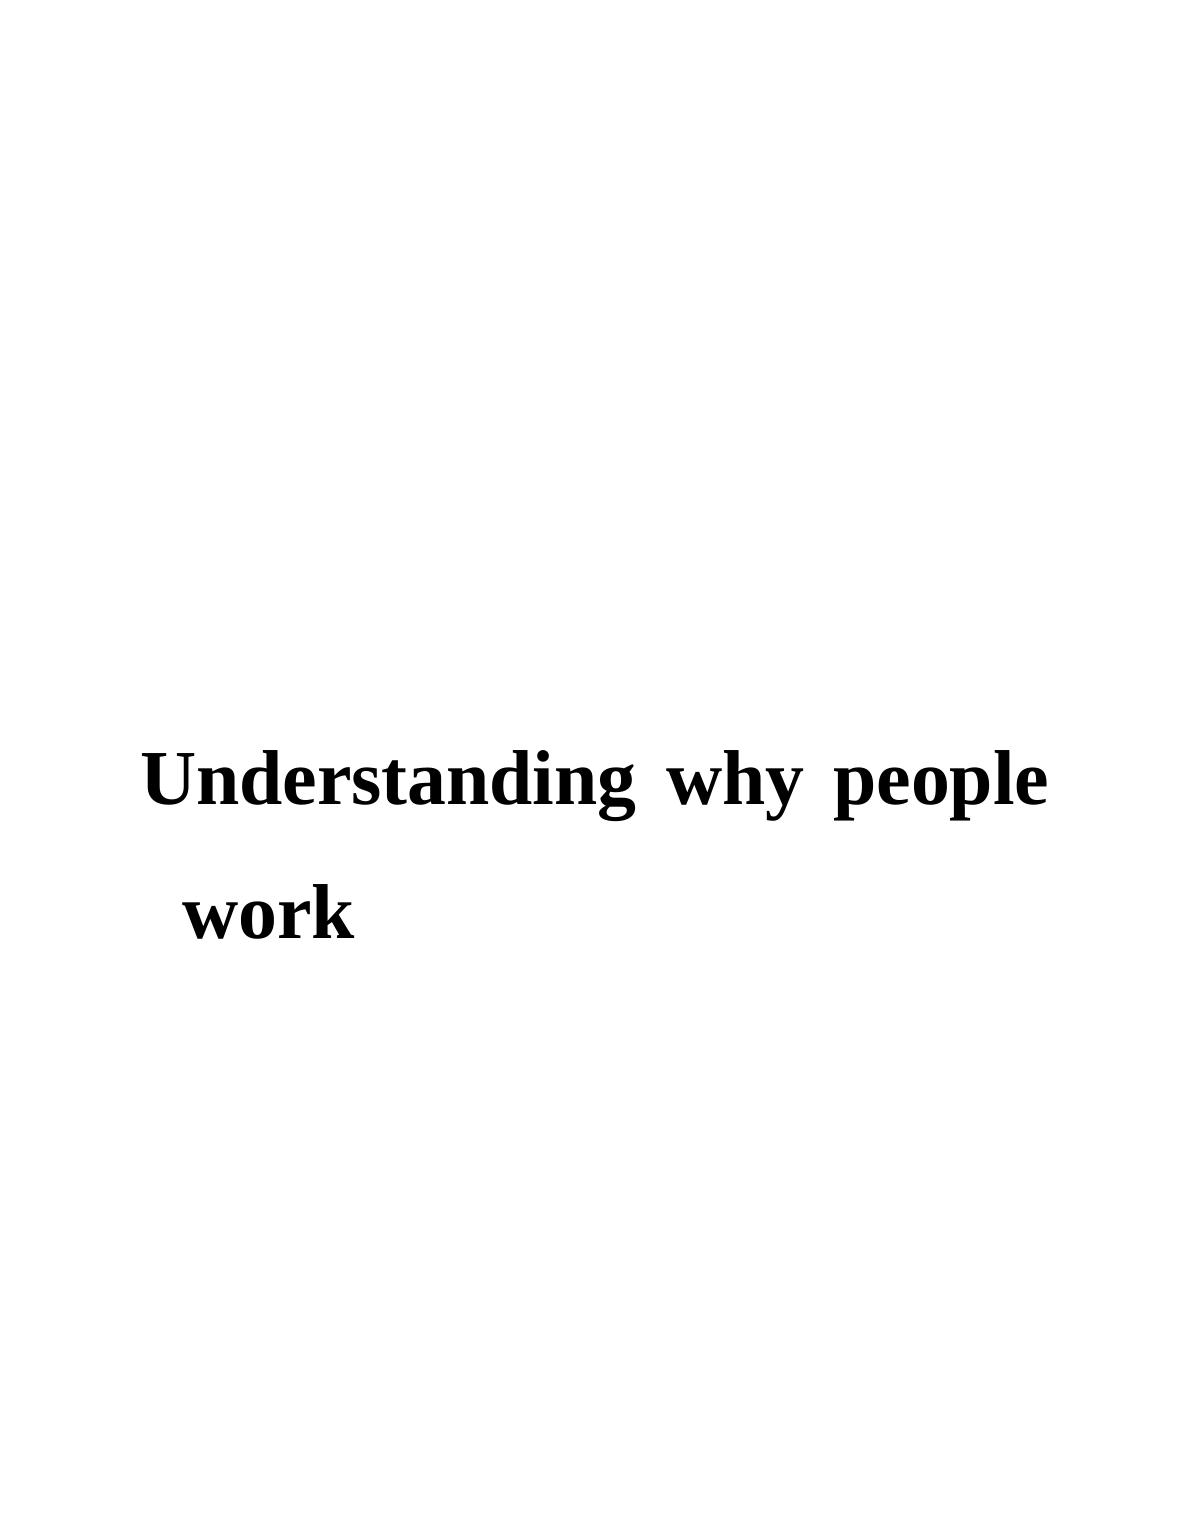 Understanding why people work_1